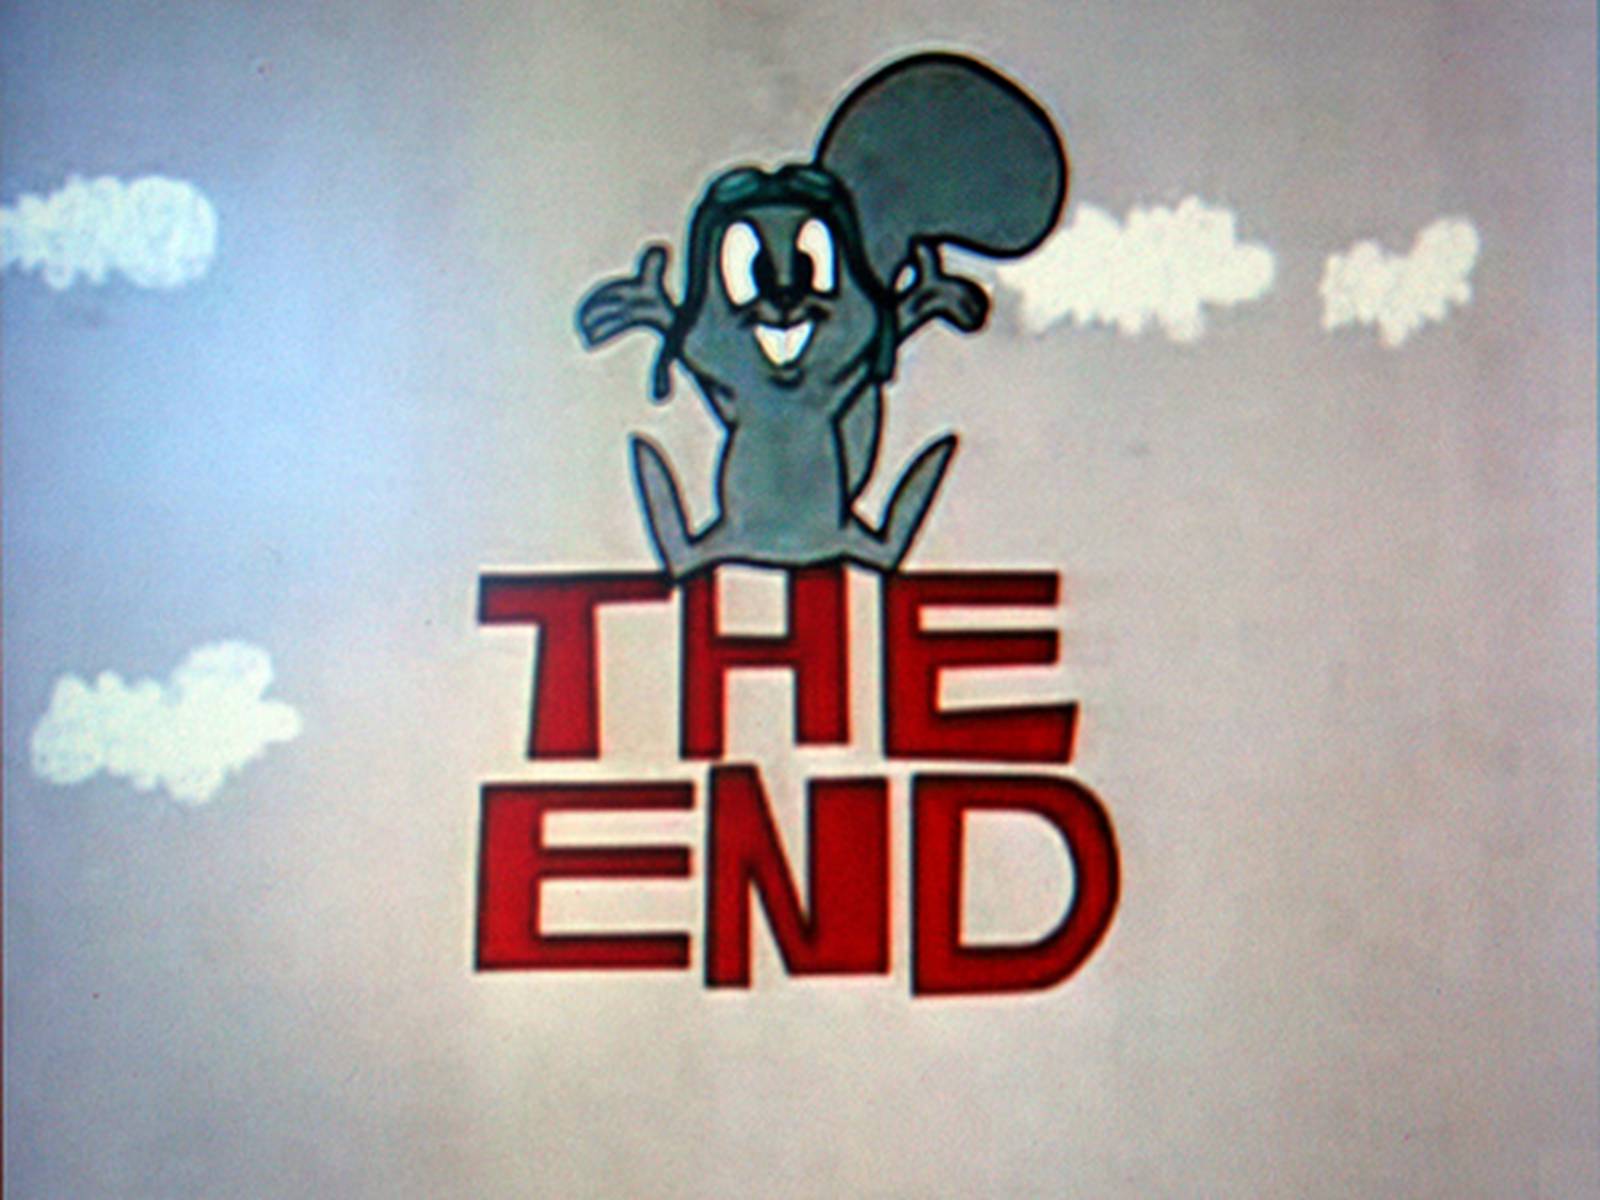 The end конец. The end. Конец the end. The end рисунок. The end надпись.